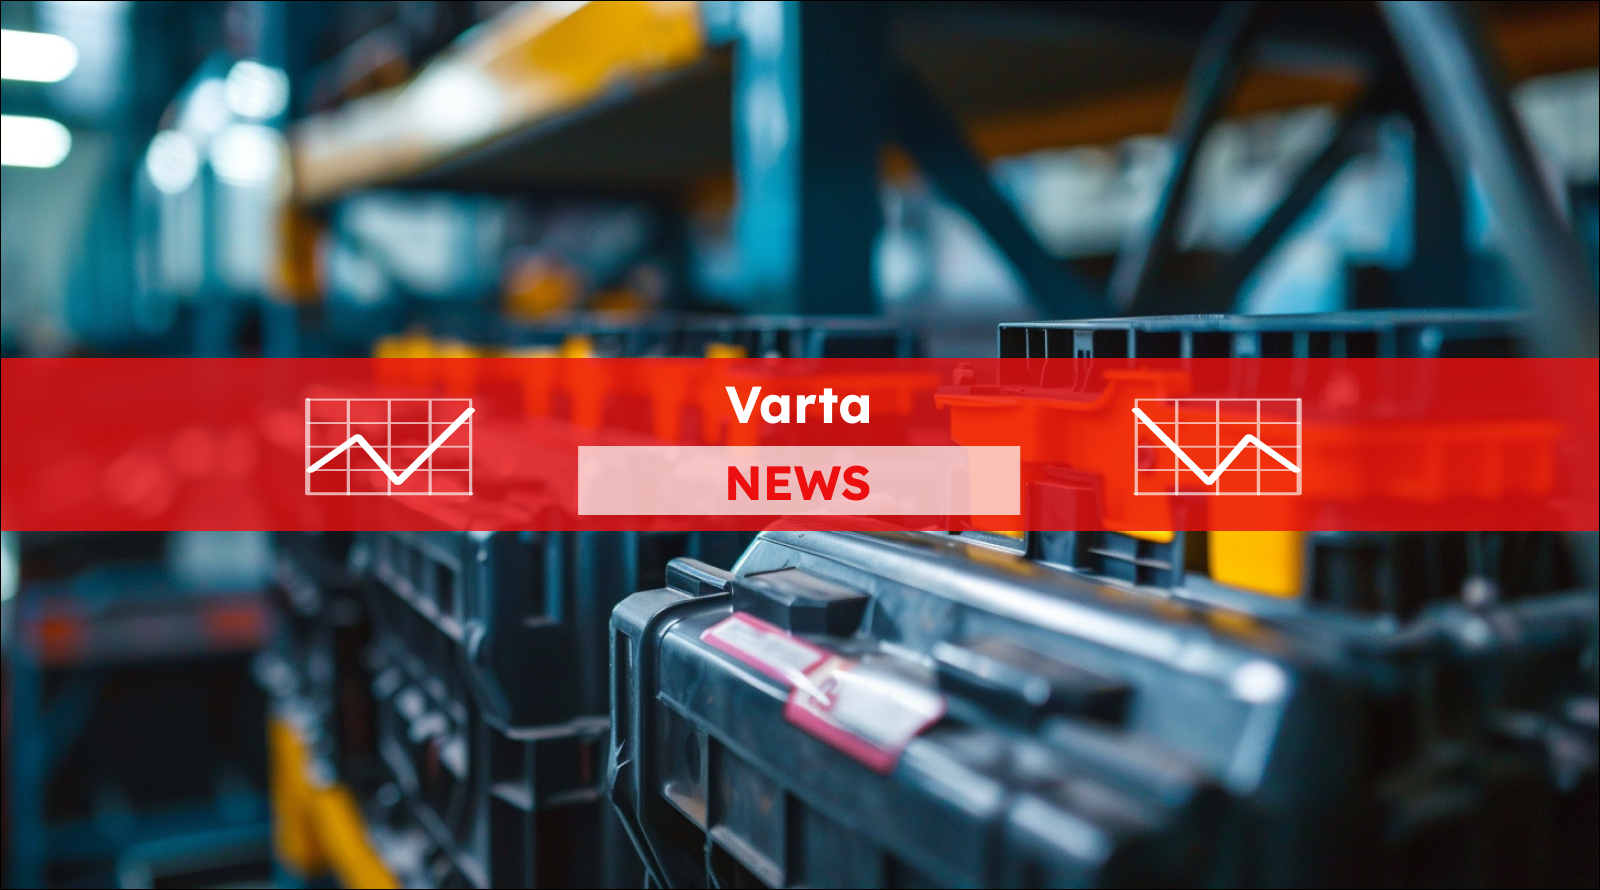 eine Reihe von Autobatterien auf einem Fließband in einer Fabrik, mit einem Varta NEWS Banner.